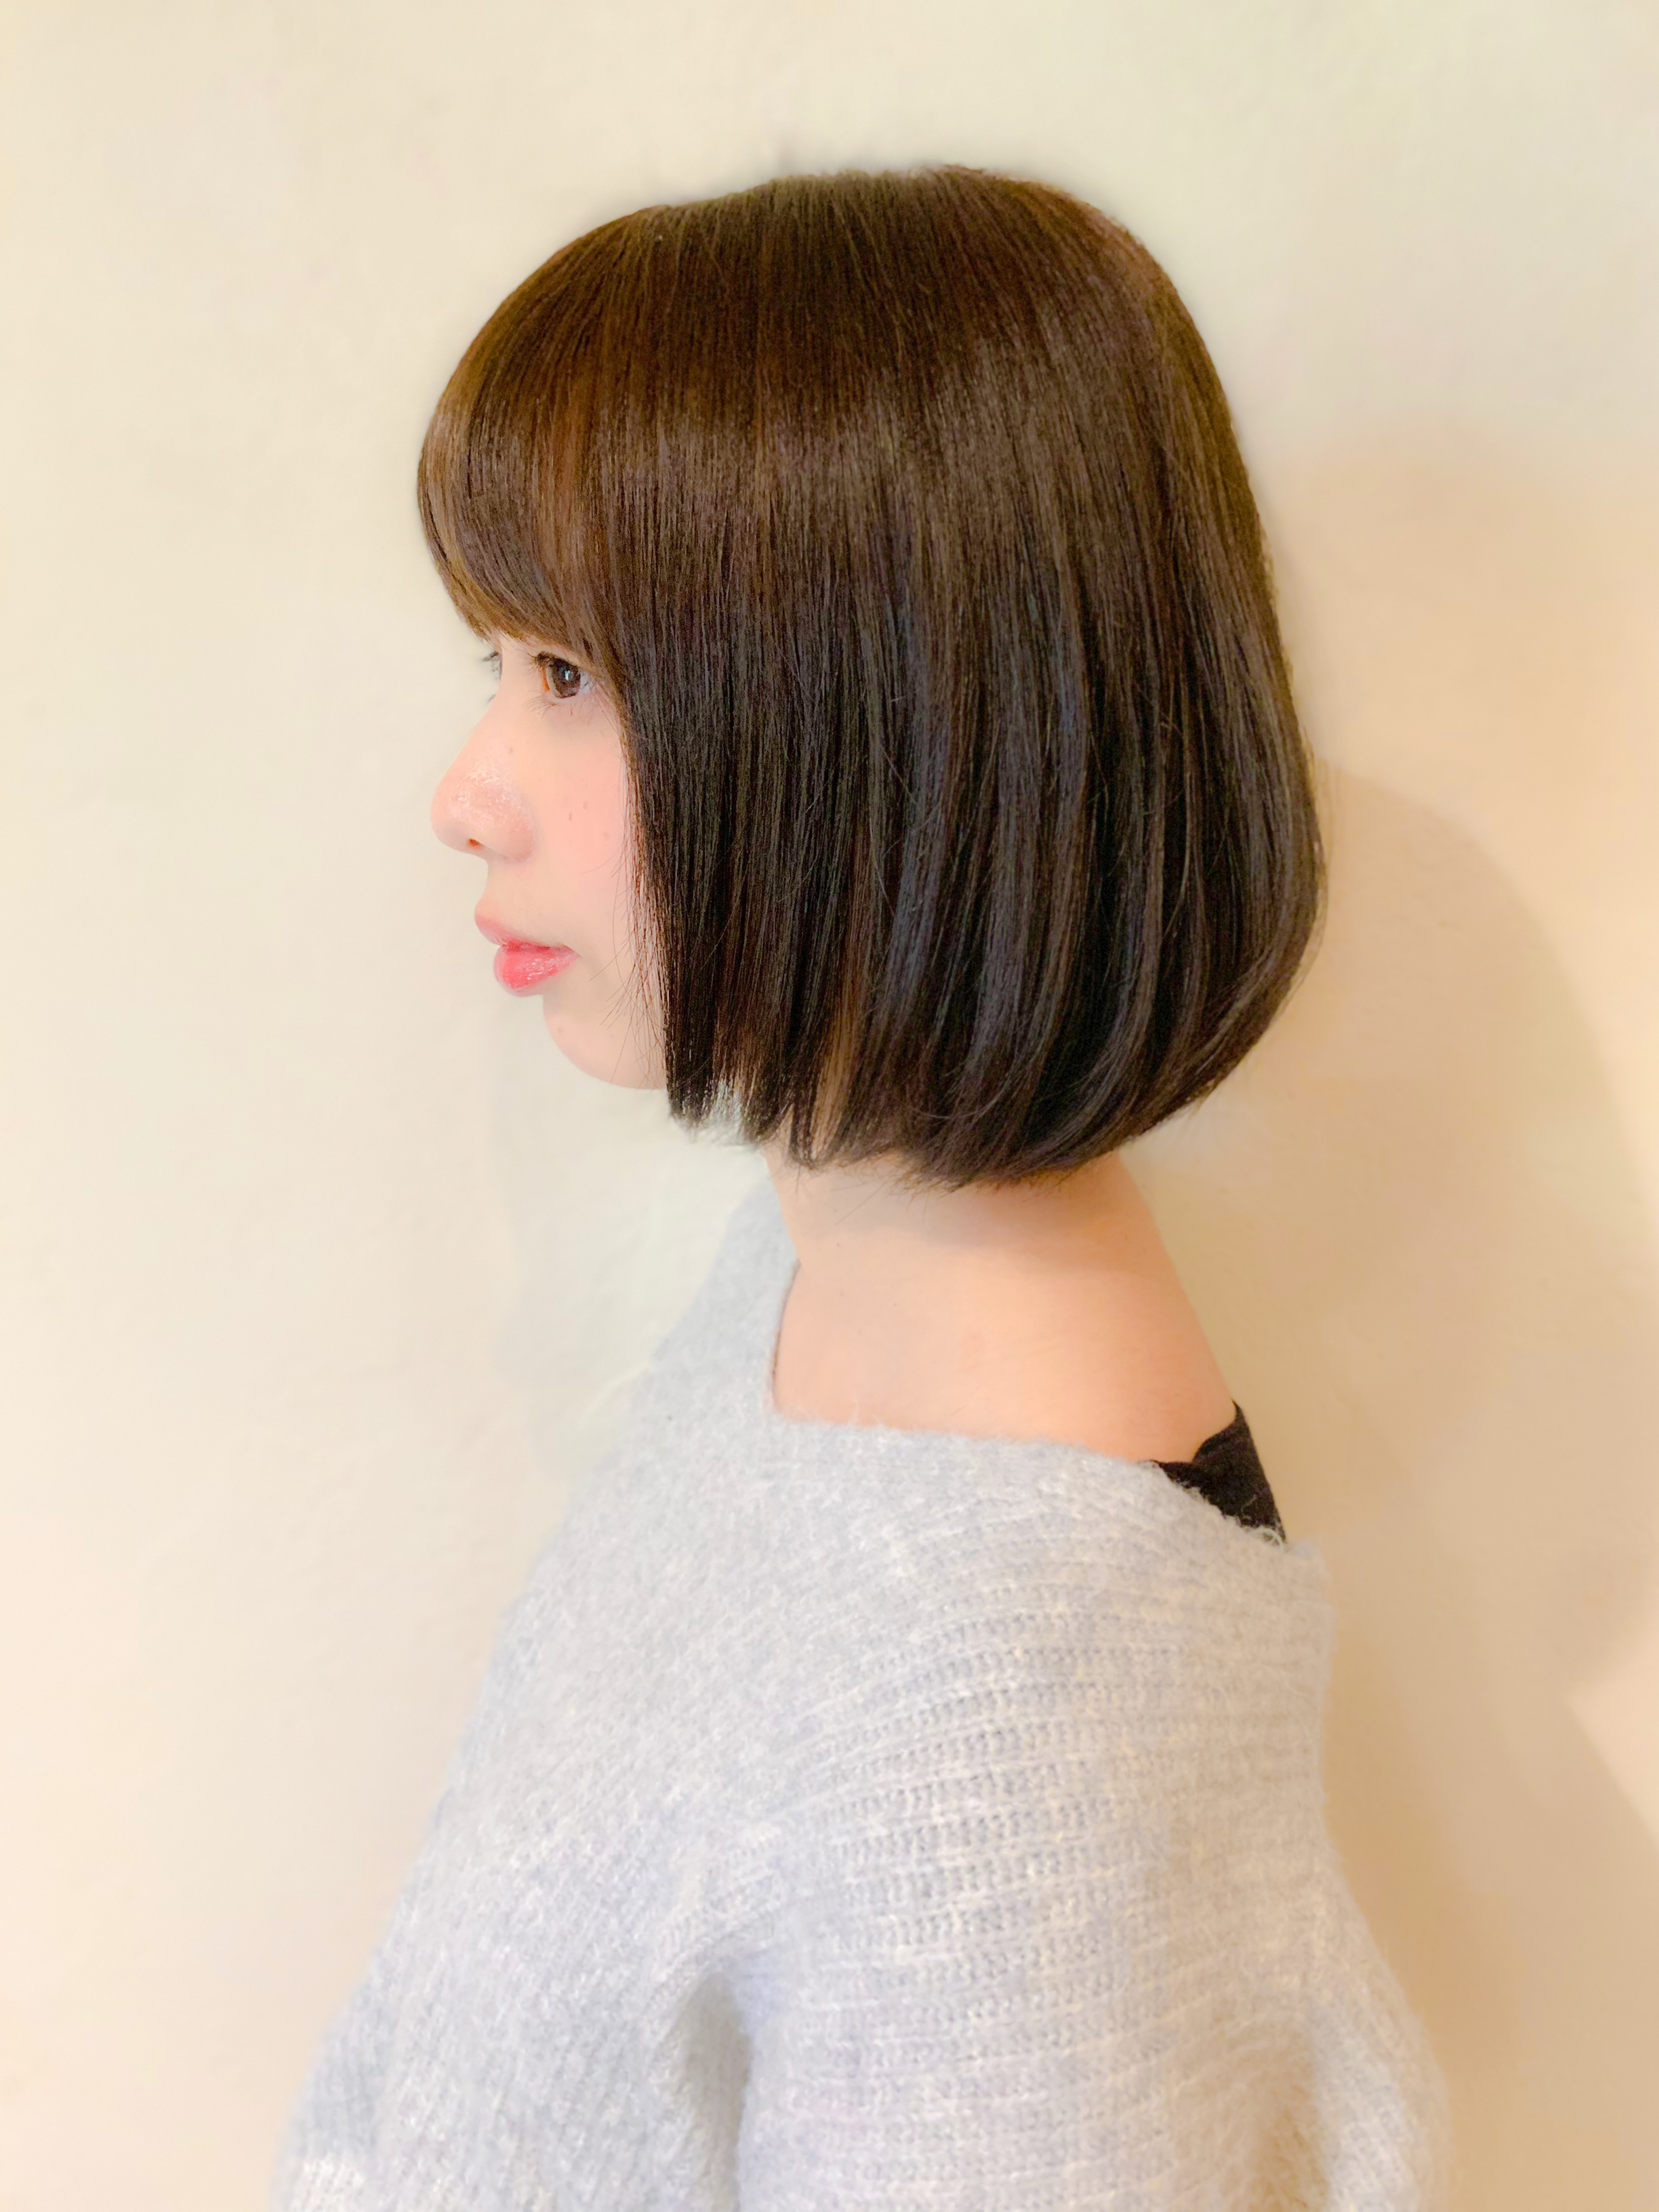 21年夏 ストレートボブの種類と似合う髪型について解説します 似合わせカットが上手い東京の美容師 美容室minx銀座 蛭田のブログ